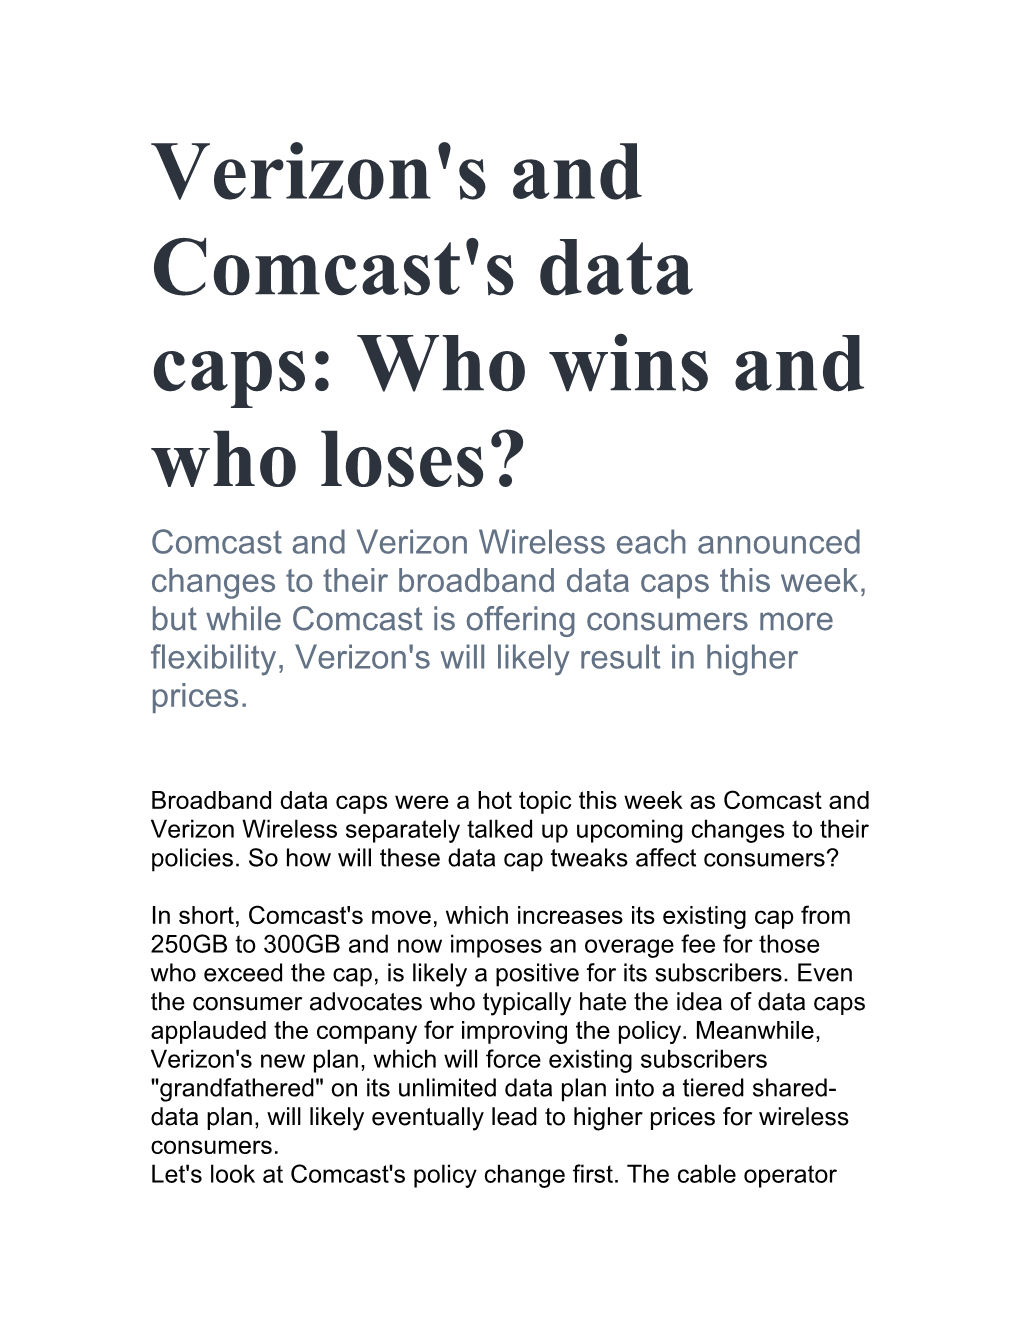 Verizon's and Comcast's Data Caps